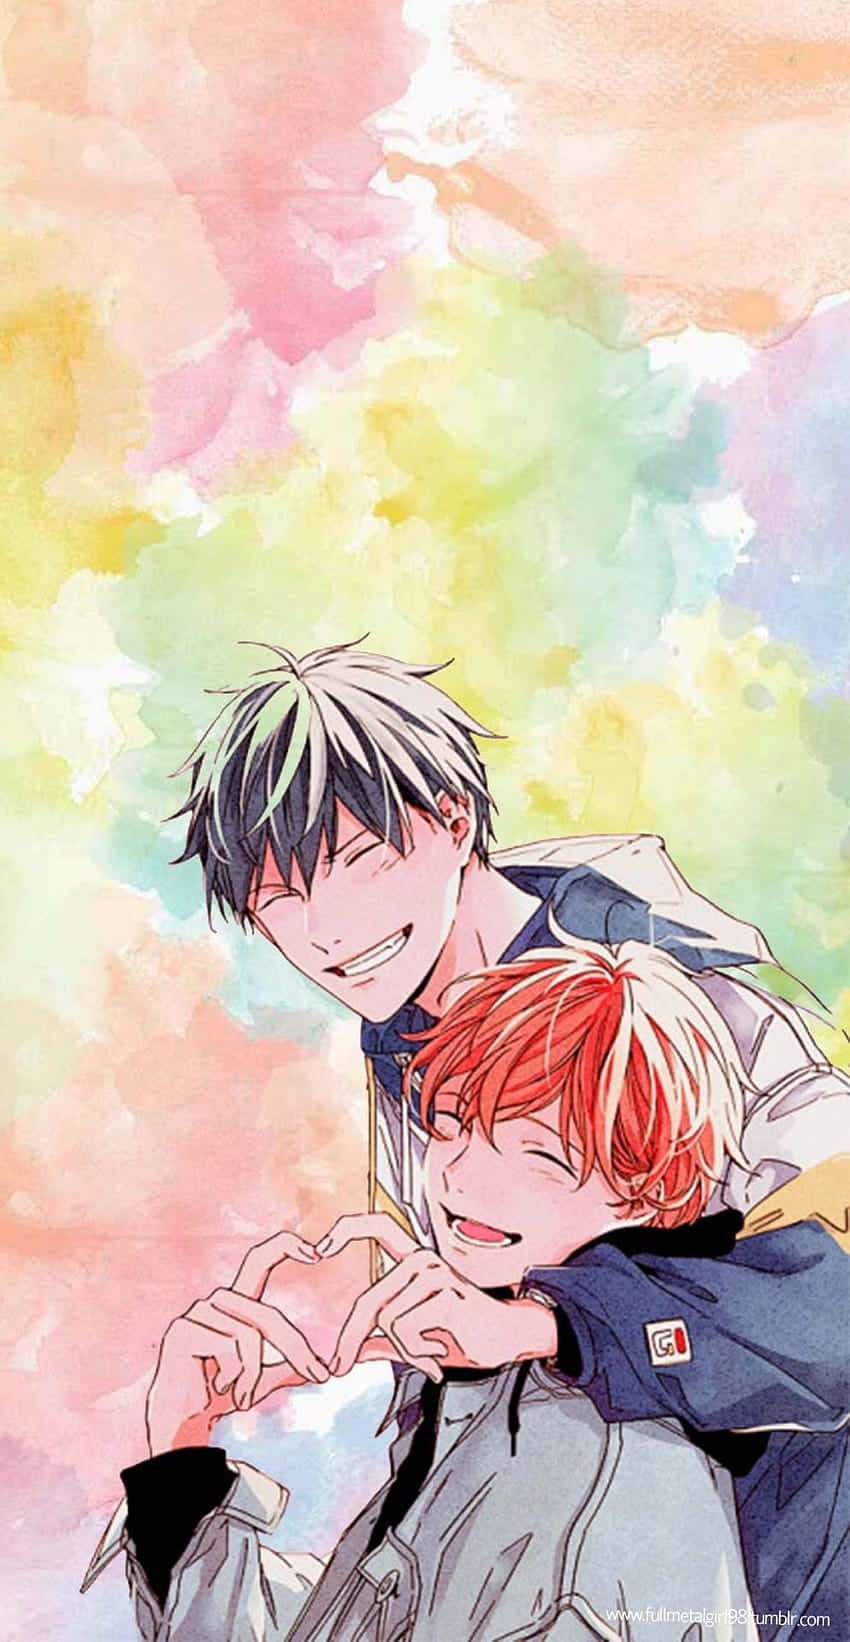 Mafuyu And Ritsuka Colorful Given Anime Wallpaper